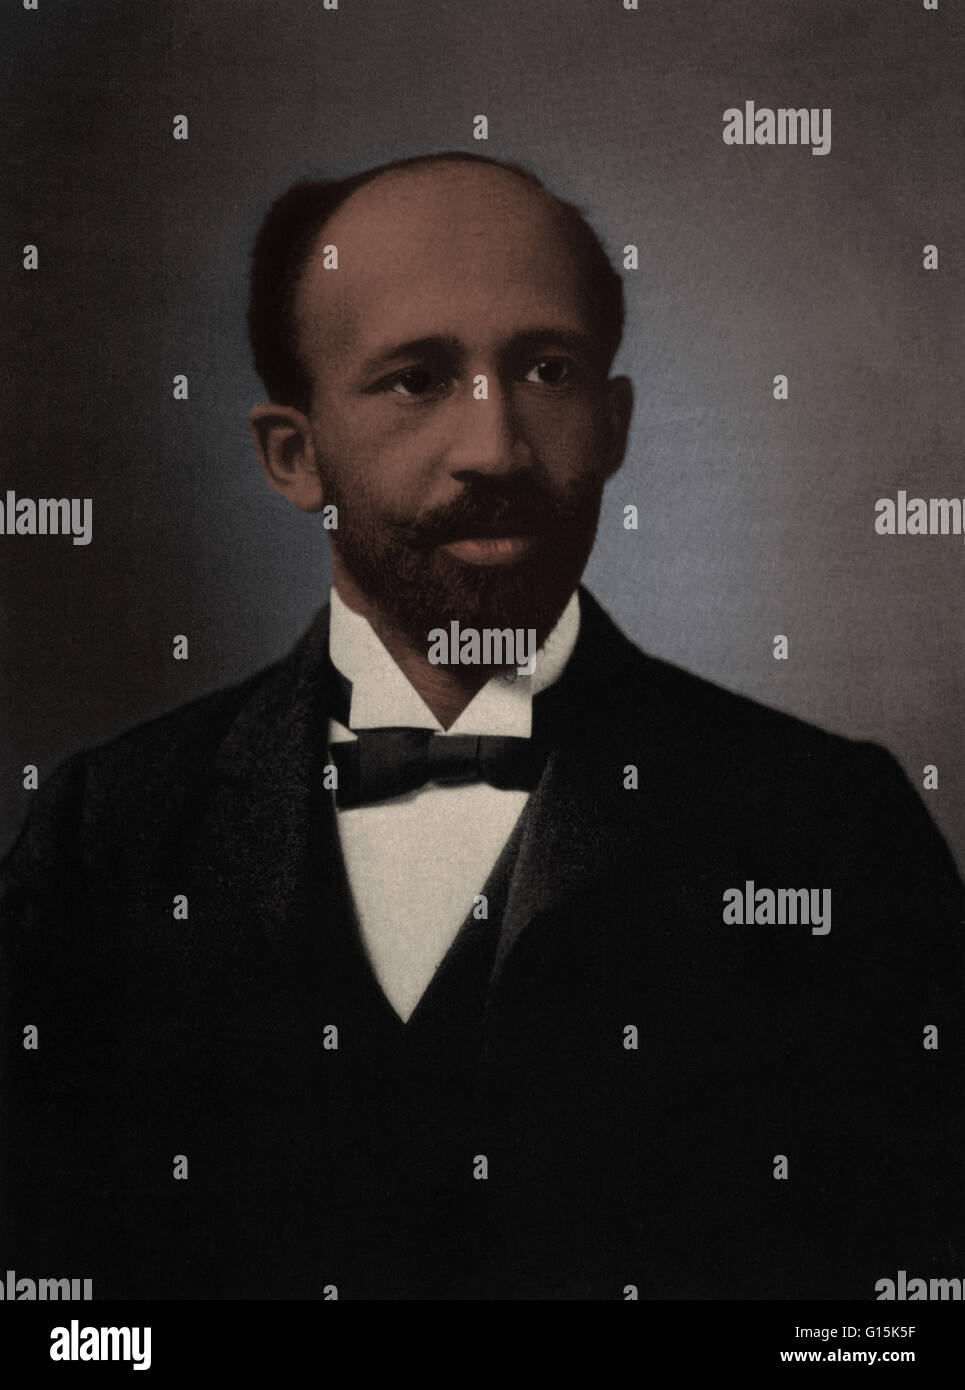 William Edward Burghardt (W.E.B.) Du Bois (1868-1963) fue un sociólogo afroamericano, historiador, activista de los derechos civiles, panafricanista, autor y editor. Du Bois creció en una comunidad tolerante y poco experimentado el racismo como un niño. Después graduat Foto de stock